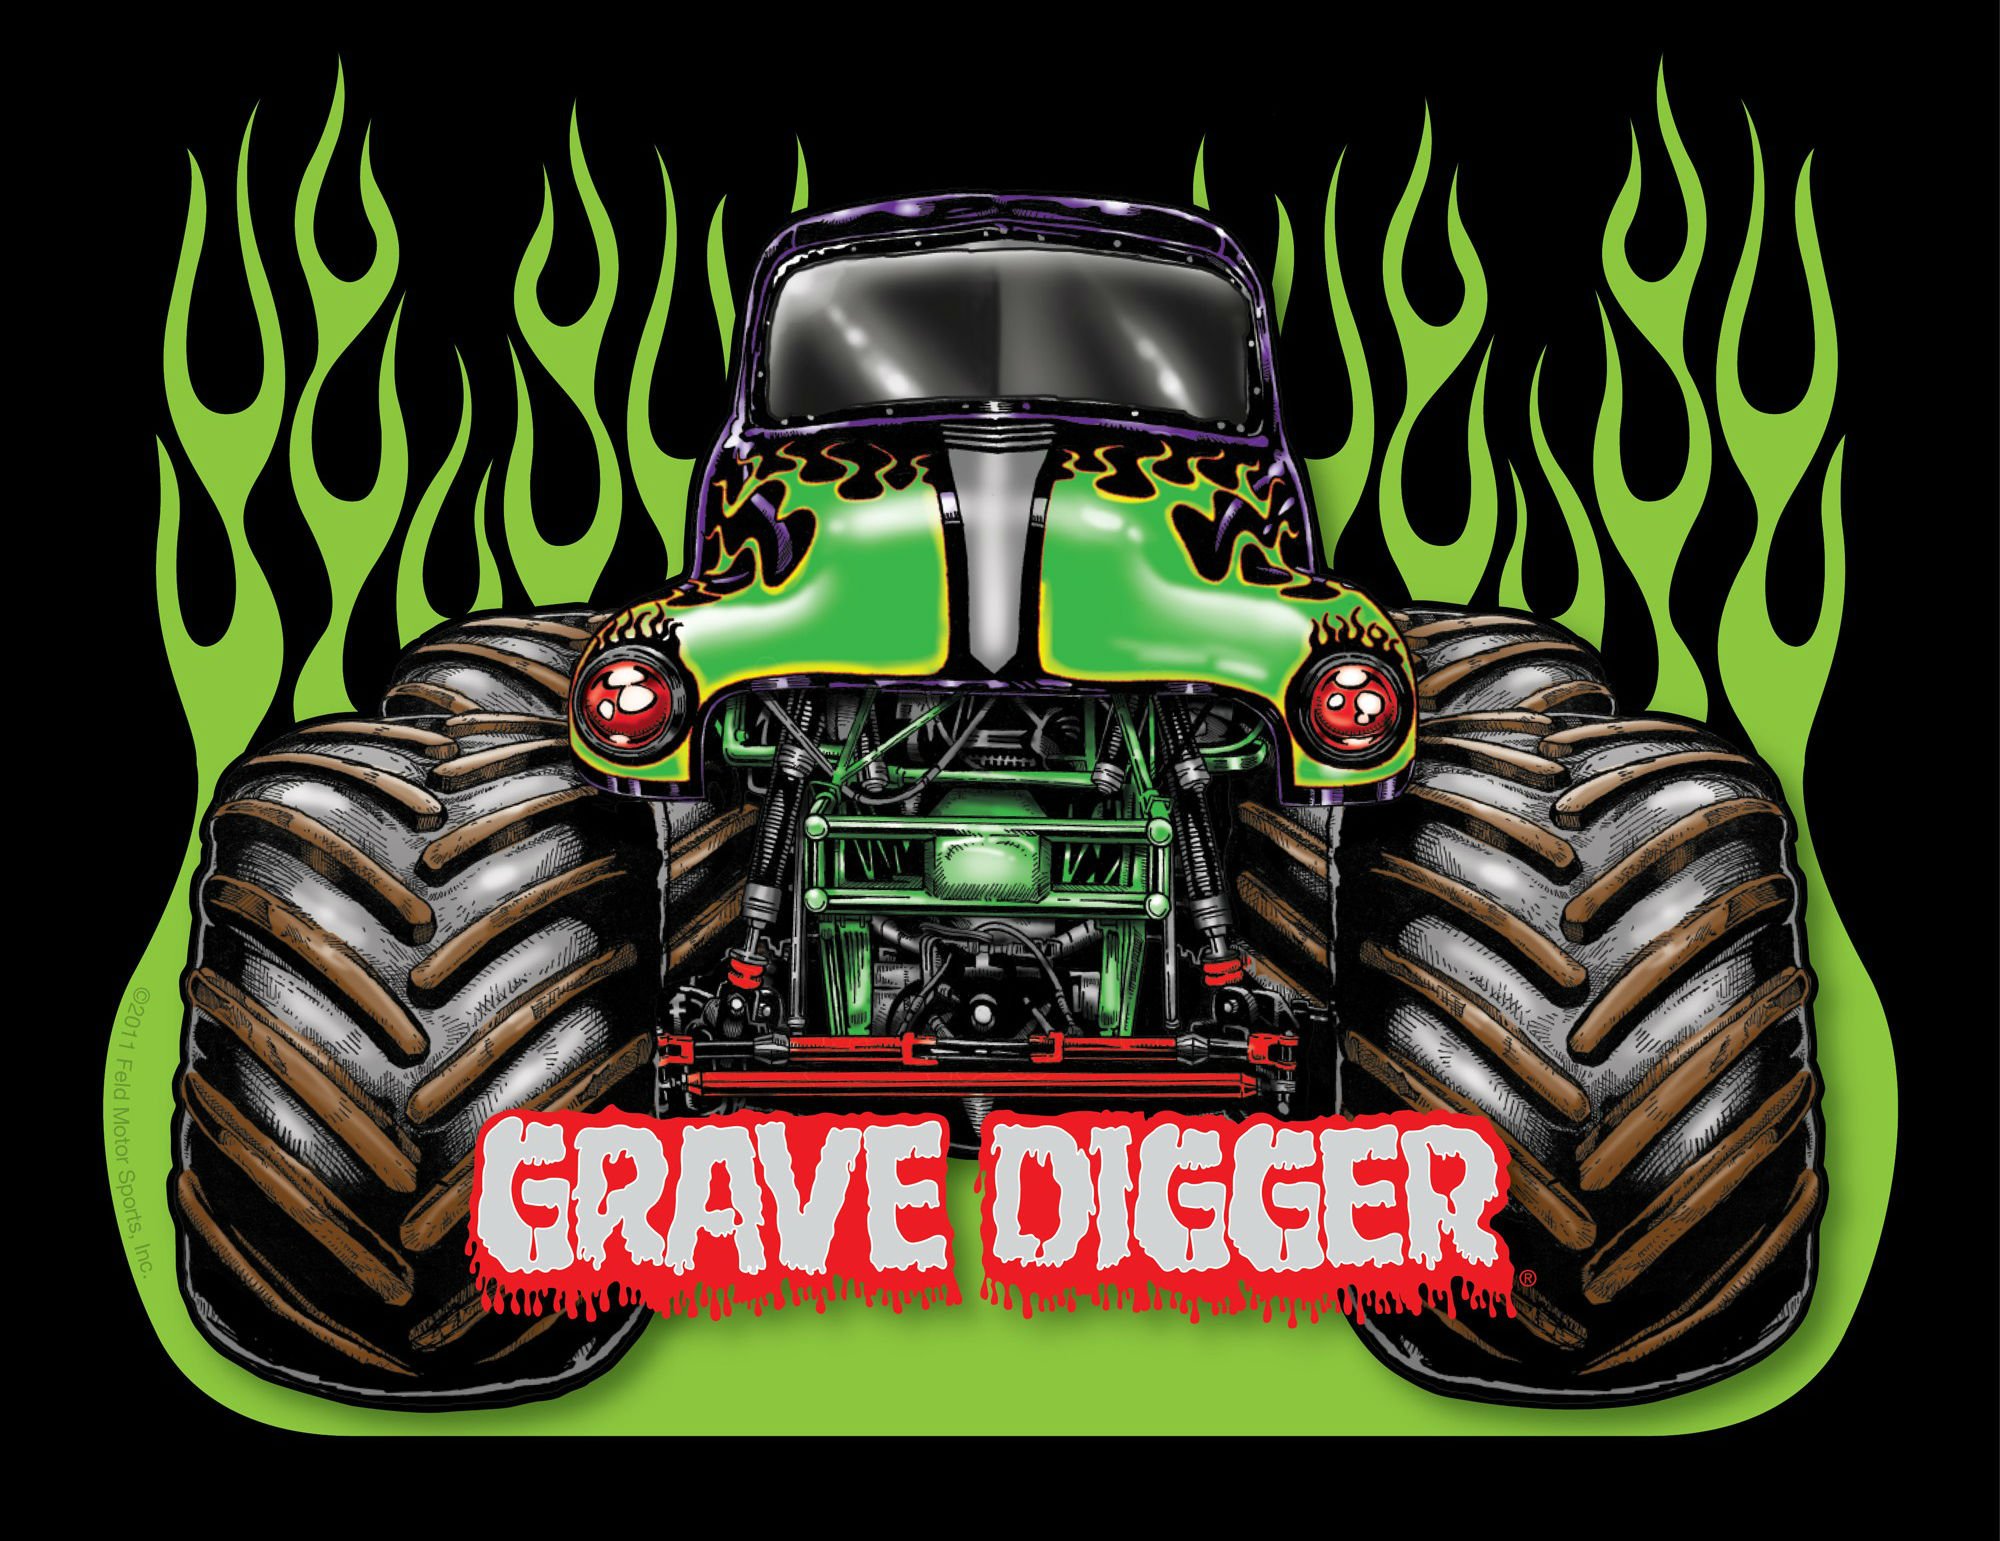 GRAVE DIGGER monster truck 4x4 race racing monster truck js